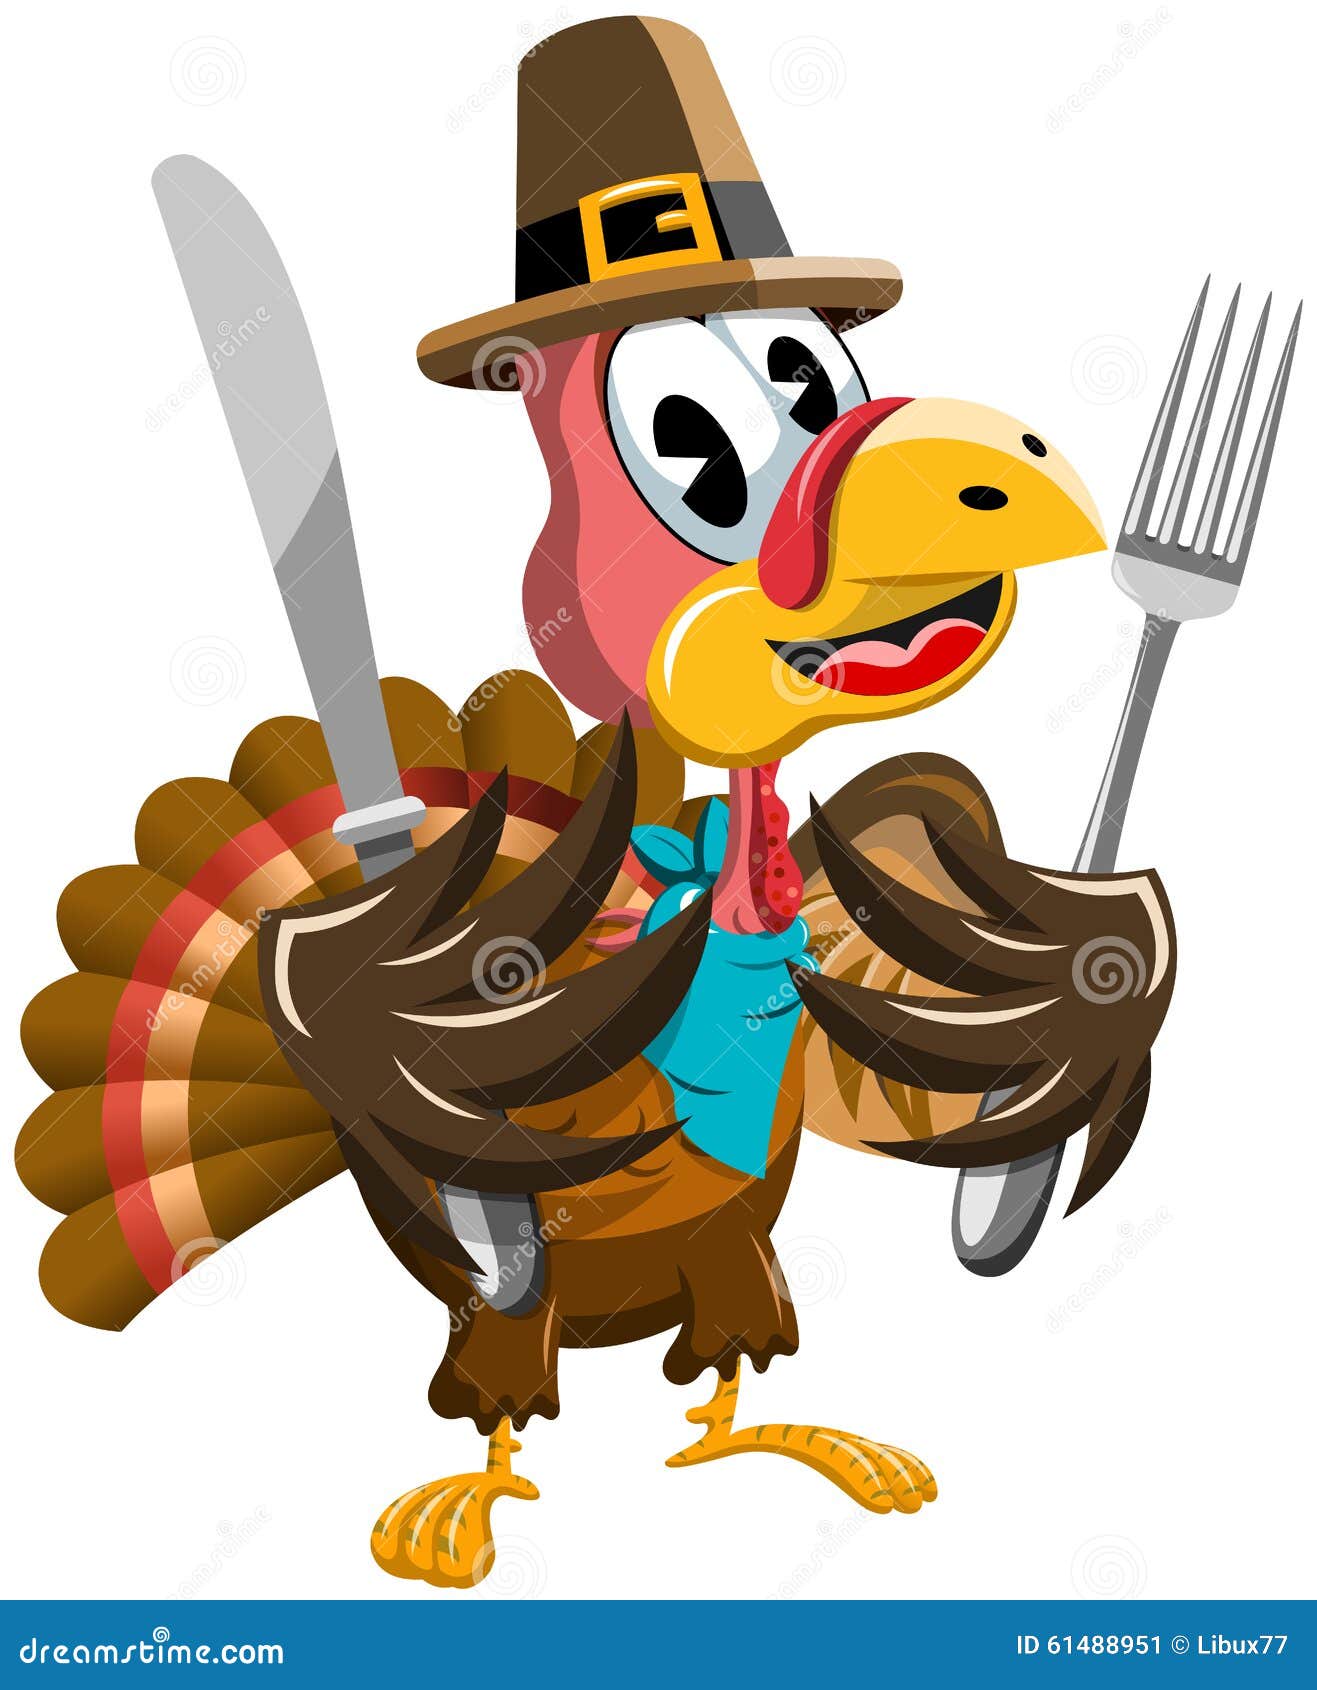 cartoon thanksgiving turkey fork knife